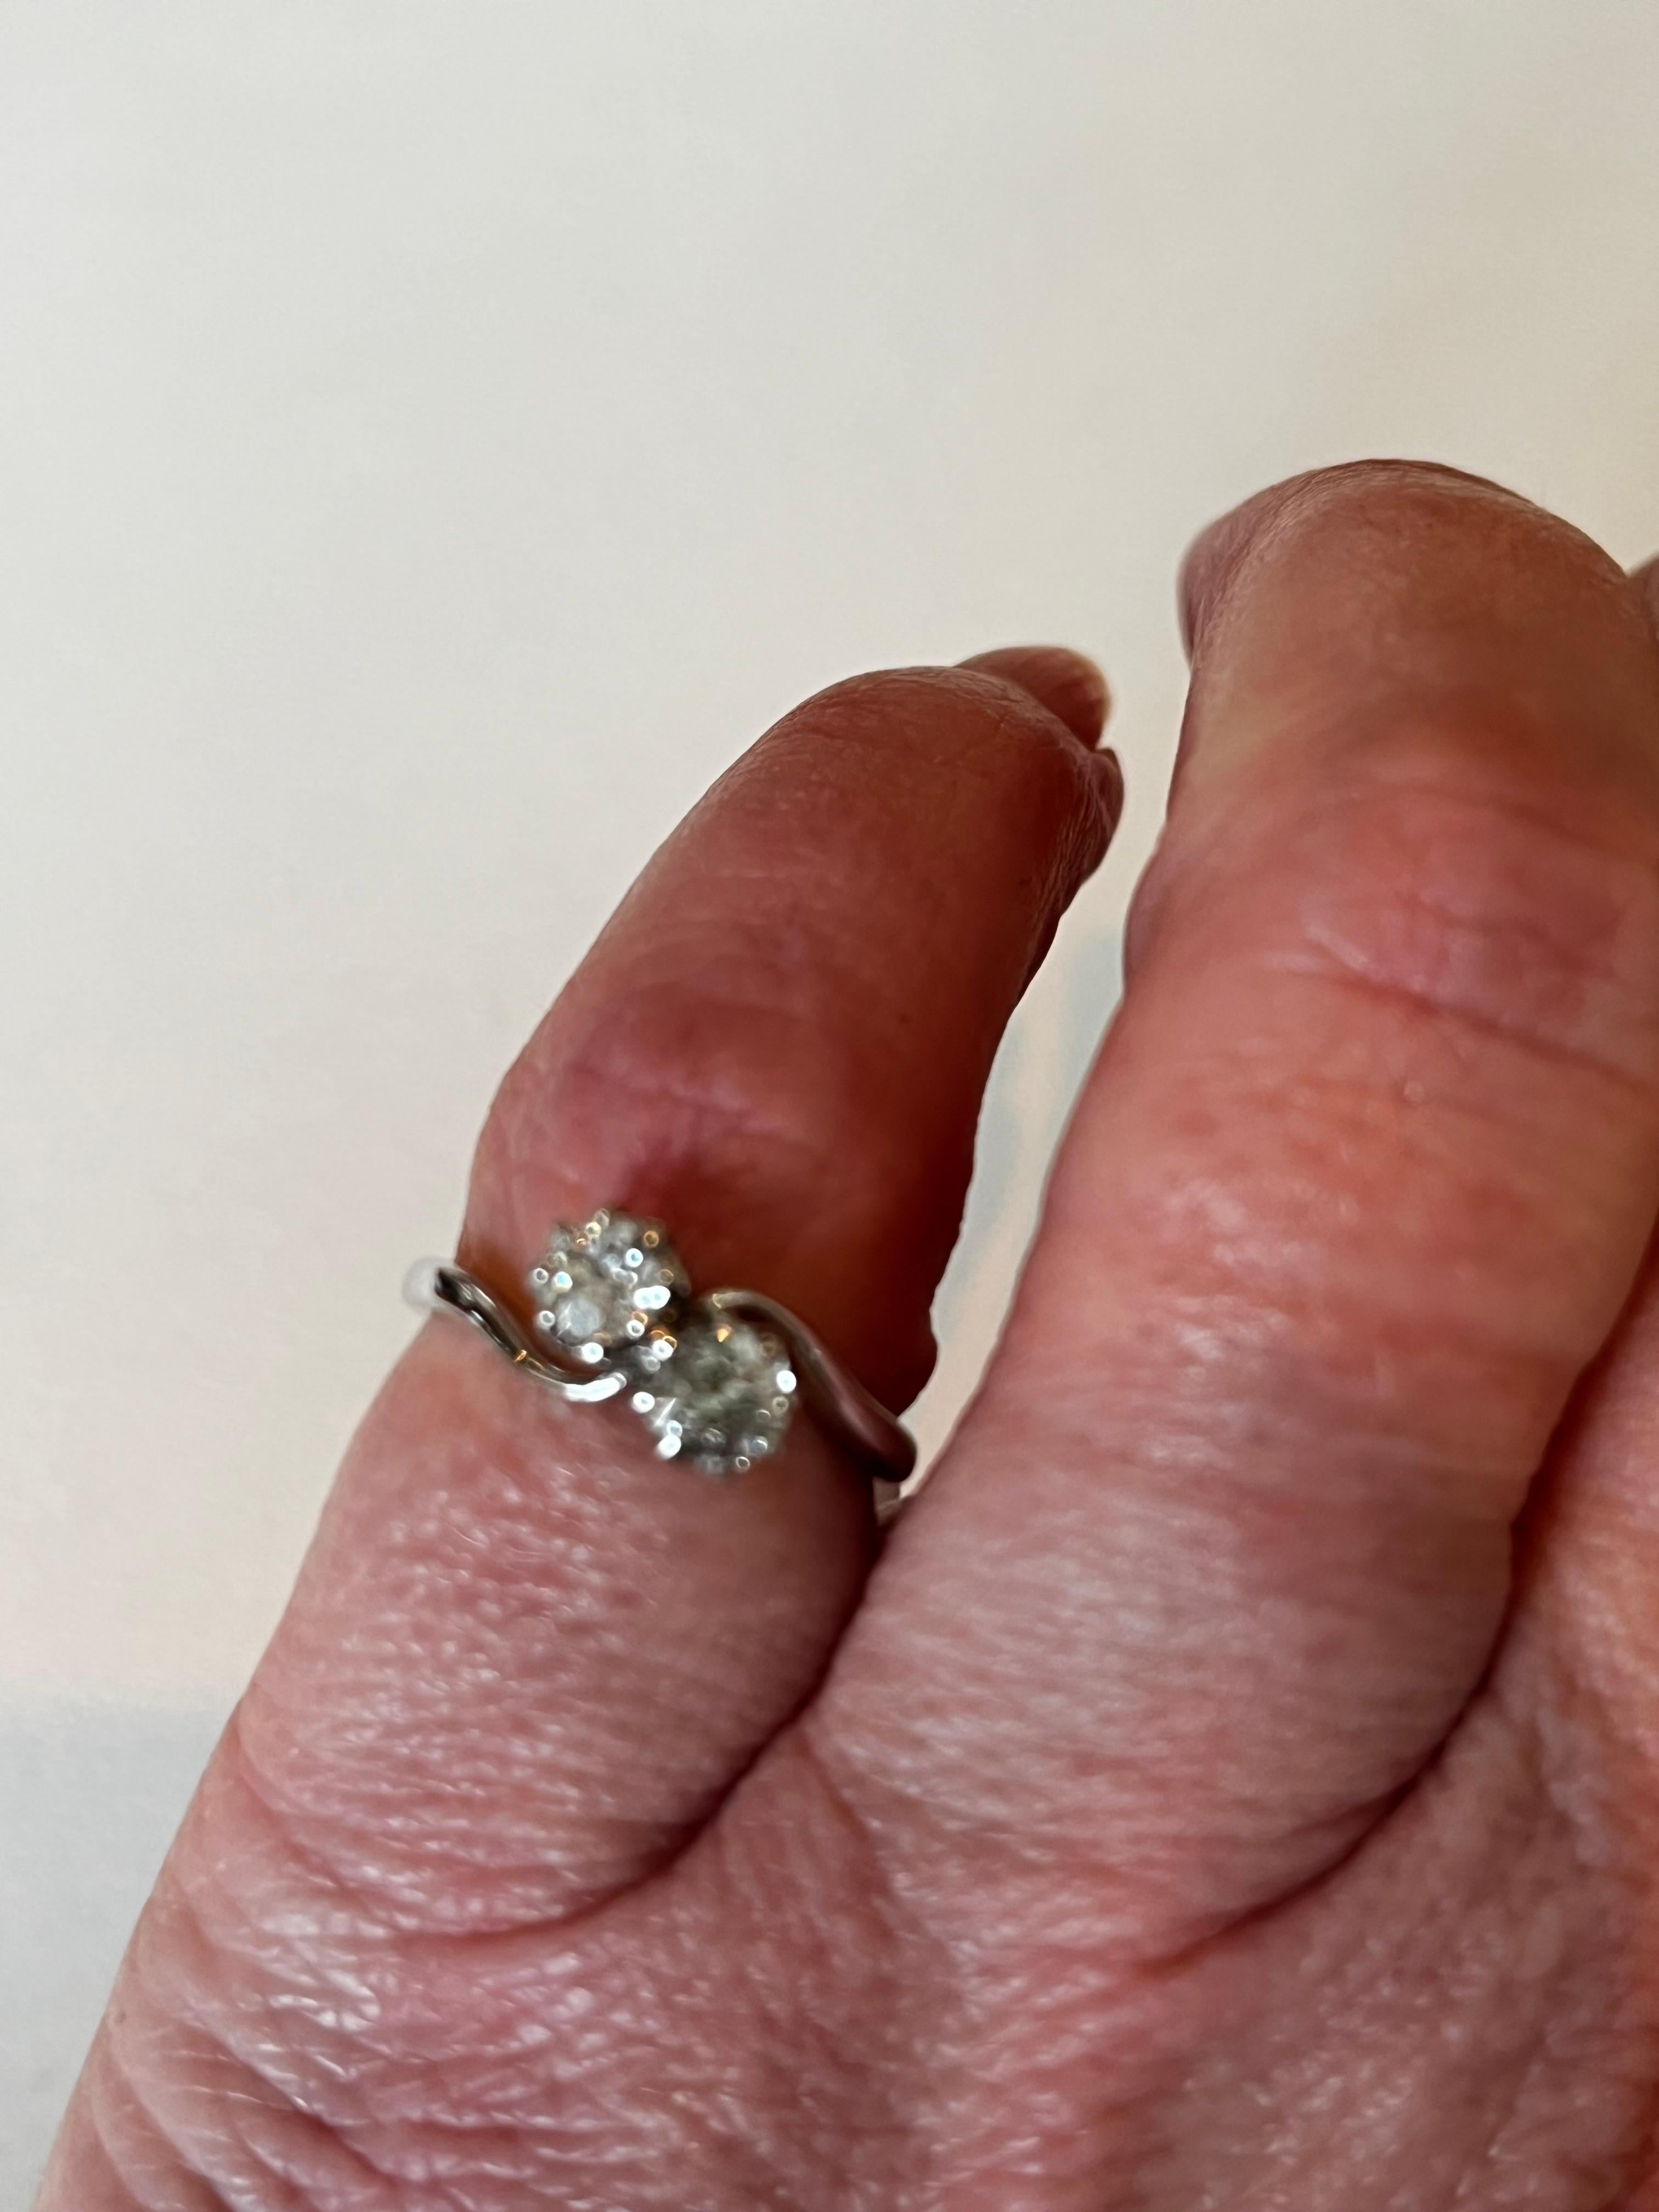 Diese hübsche antike zwei Stein Diamantring ist est .60ct, Klarheit S/I1.  Dieser Ring aus 18 Karat Weißgold wird in der Größe 4,75 (USA) bzw. J (Großbritannien) geliefert.  Datiert ca. 1950er Jahre.